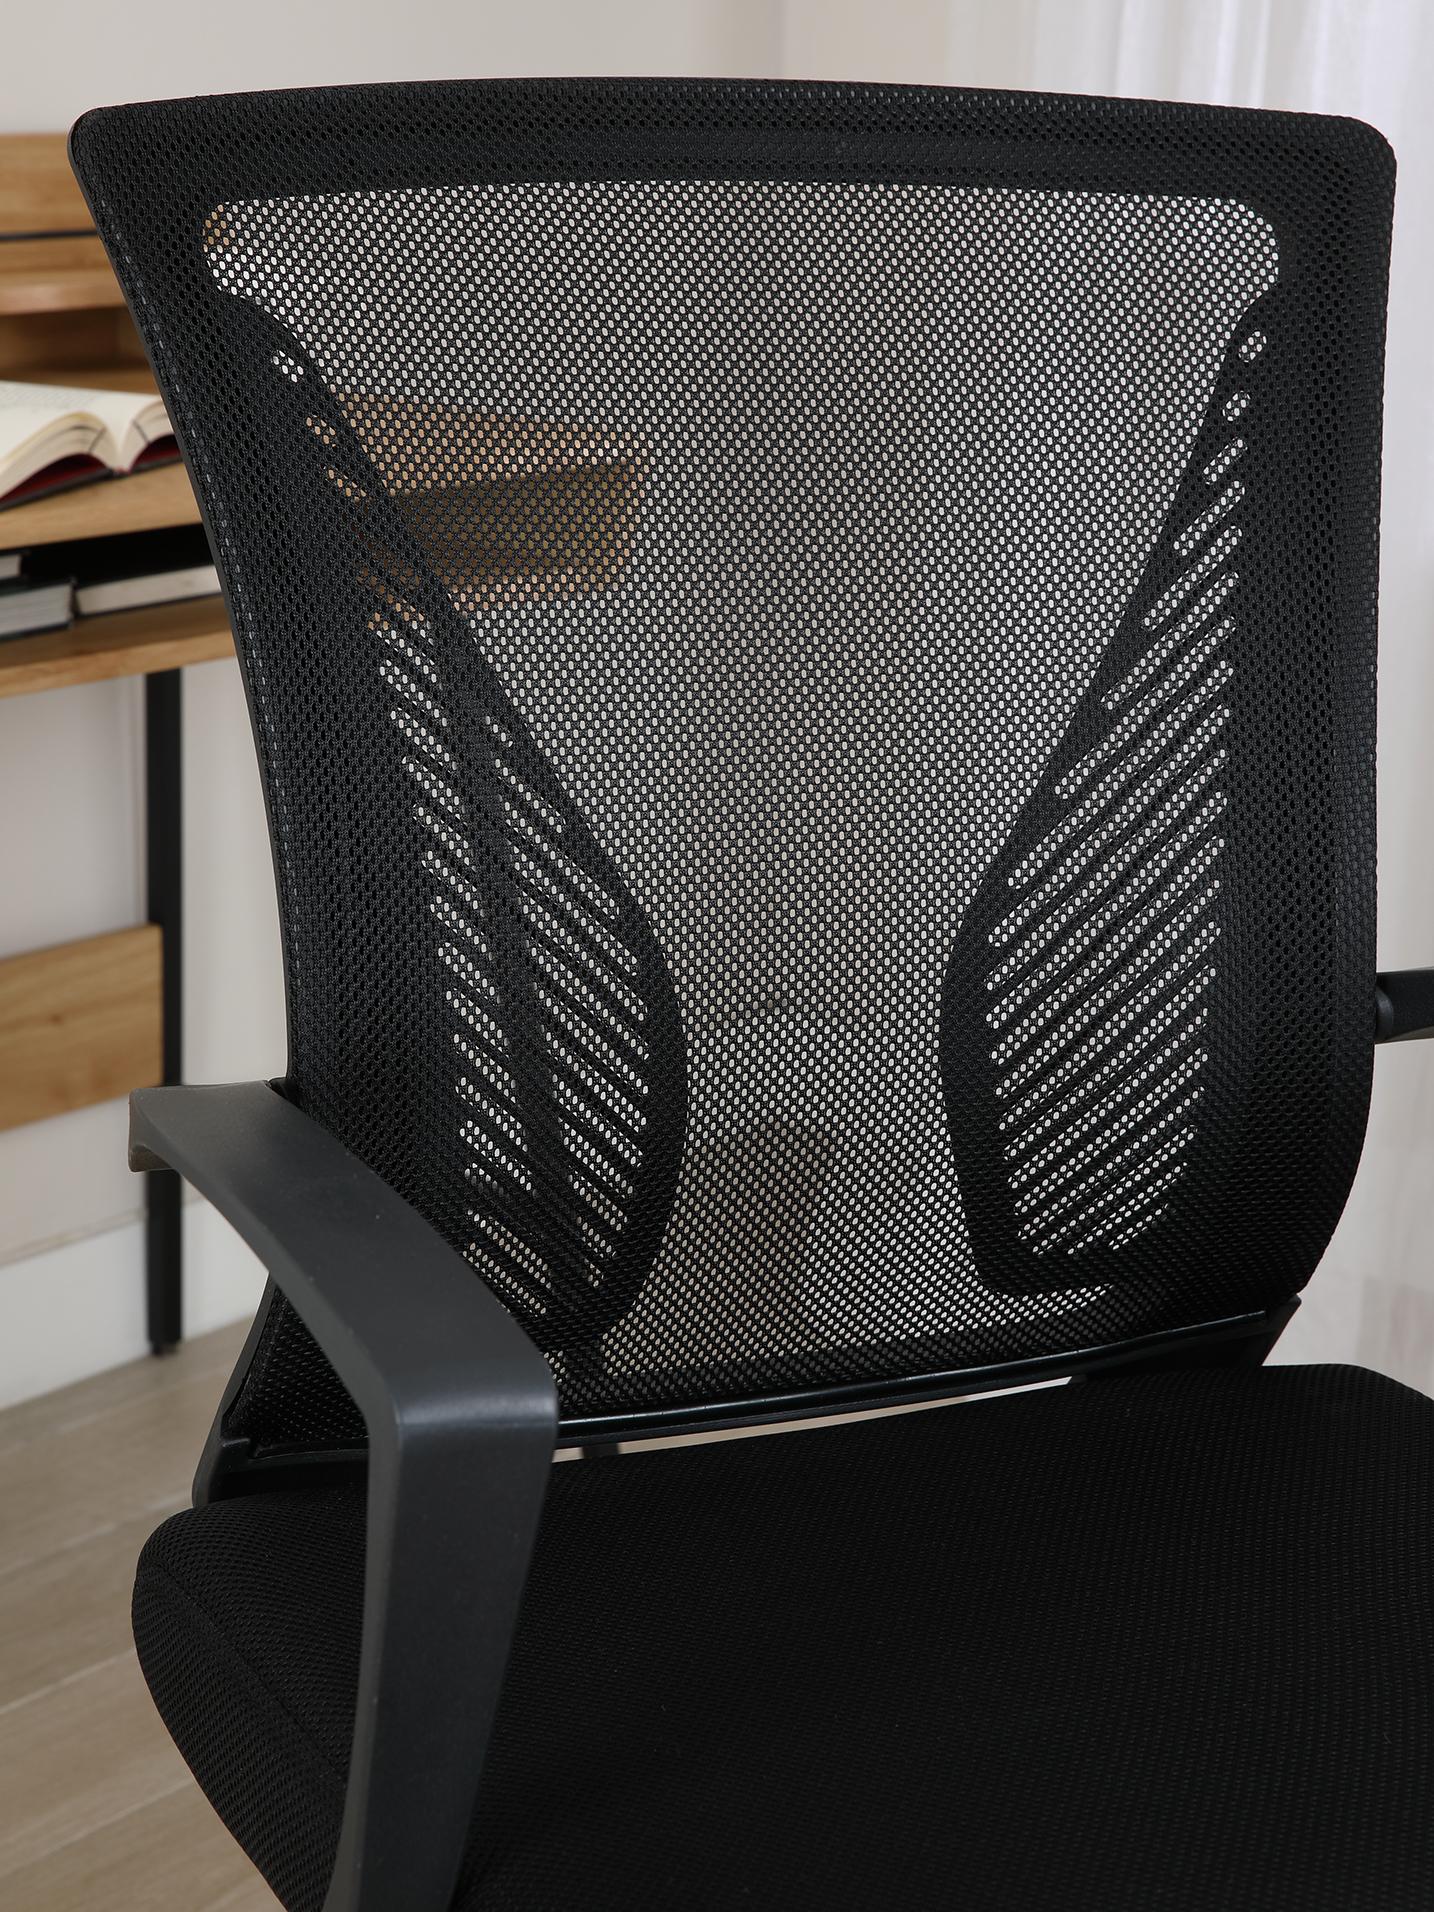 เก้าอี้สำนักงาน รุ่นเด็กซ์เตอร์ - สีดำ - เก้าอี้ออฟฟิศ เก้าอี้ทำงาน พนักพิงผ้าตาข่าย